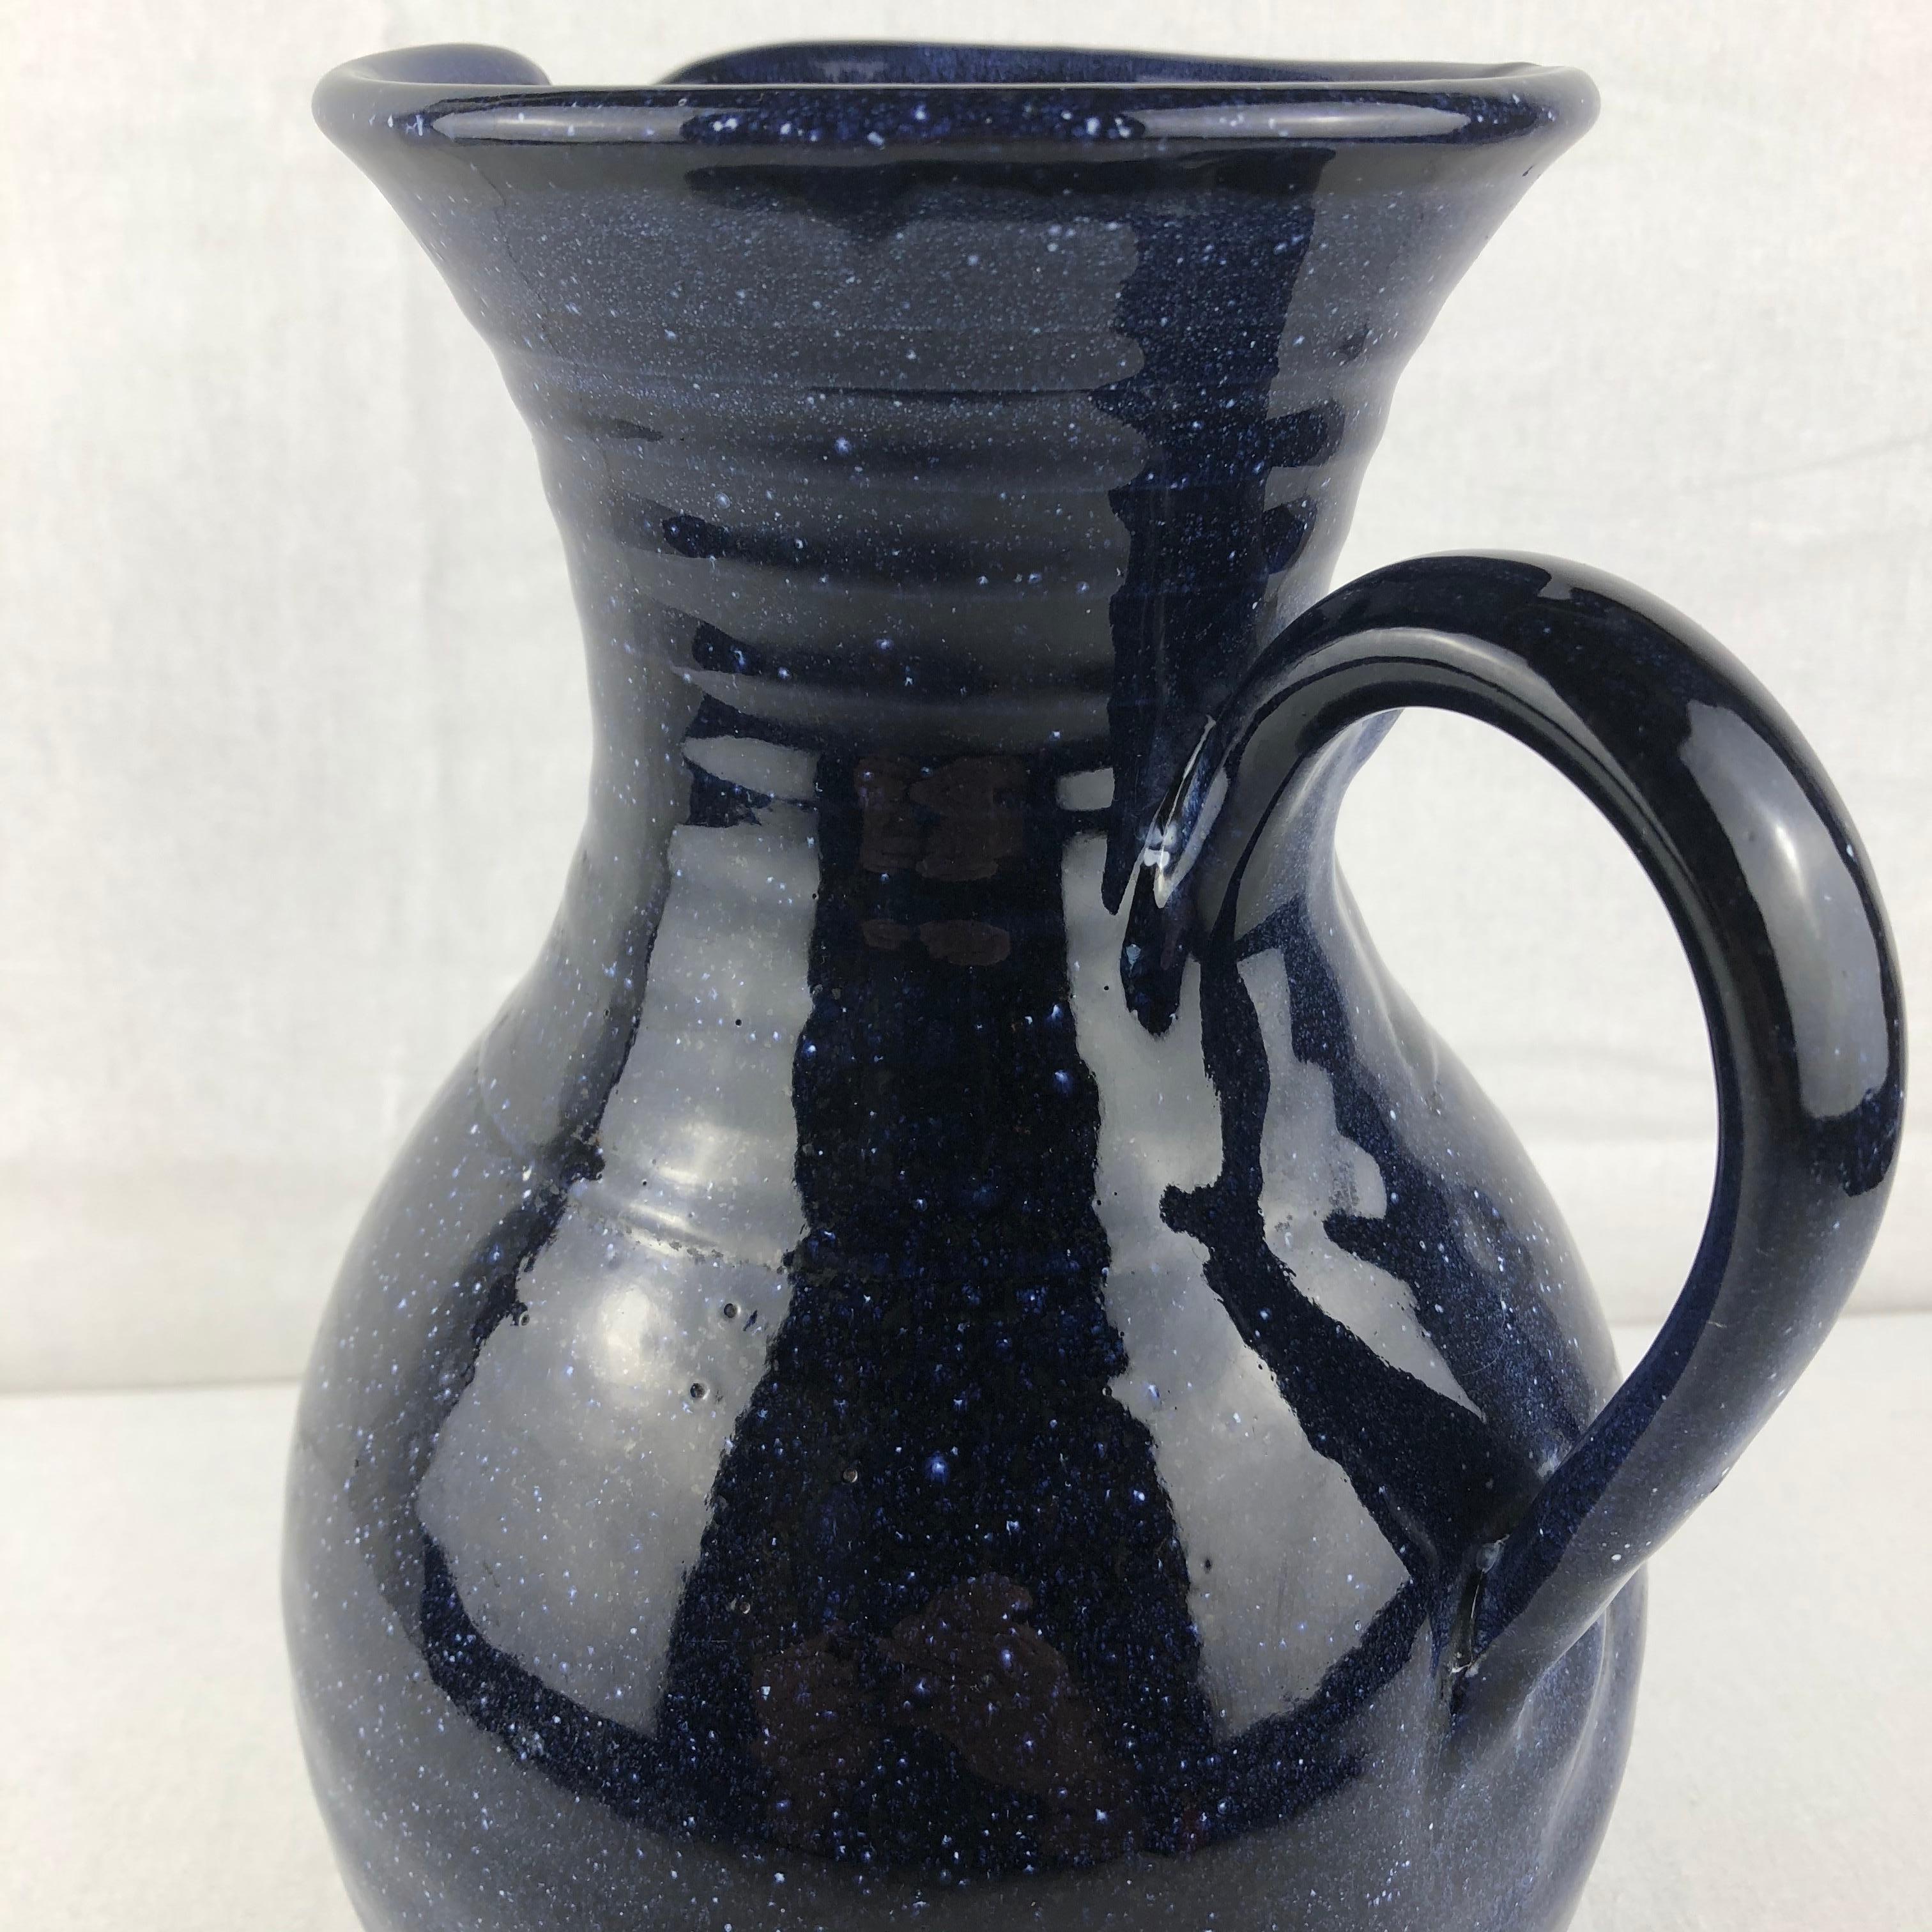 Magnifique vase ou pichet à anses du milieu du 20e siècle, fabriqué à la main par Anduze. Cet objet décoratif accrocheur est en parfait état et rehaussera n'importe quelle table, comptoir ou étagère. 

Parfait pour presque toutes les combinaisons de